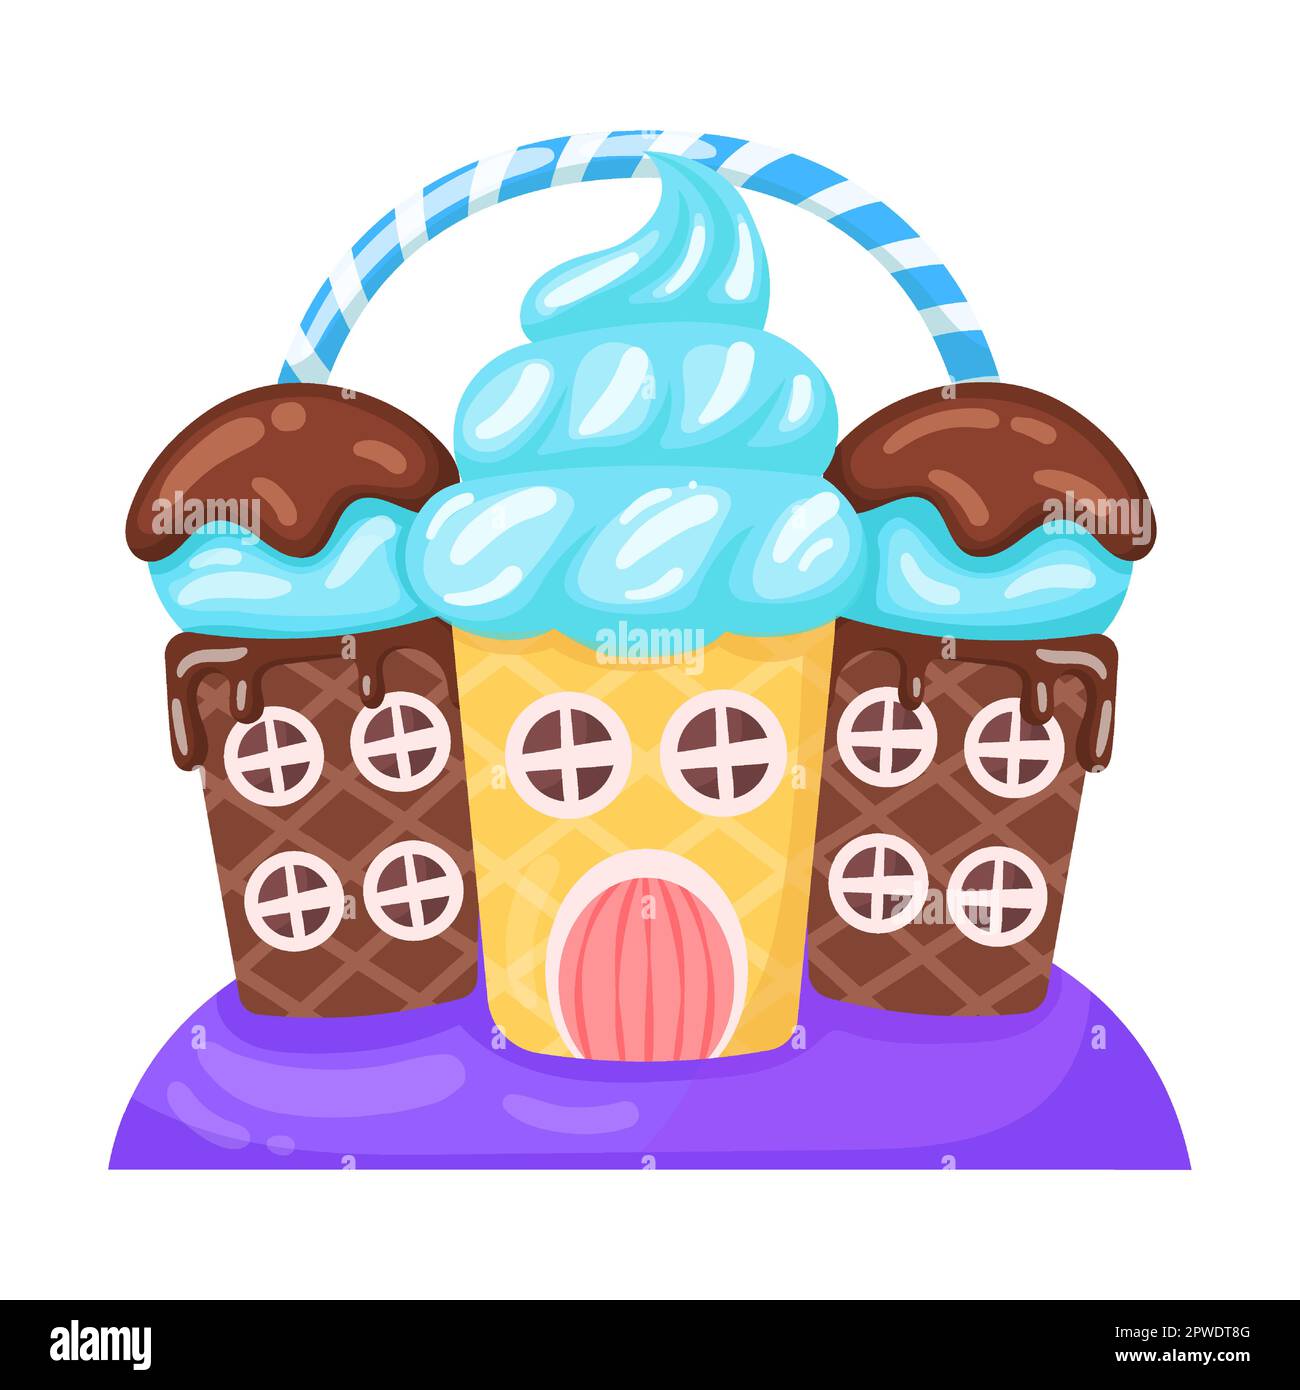 Candie in Form eines Hauses mit Schokolade und Creme-Eis, Vektorbild. Fantasy Land Karamell und Schokolade Desserts, Cupcakes, Kekse Stock Vektor